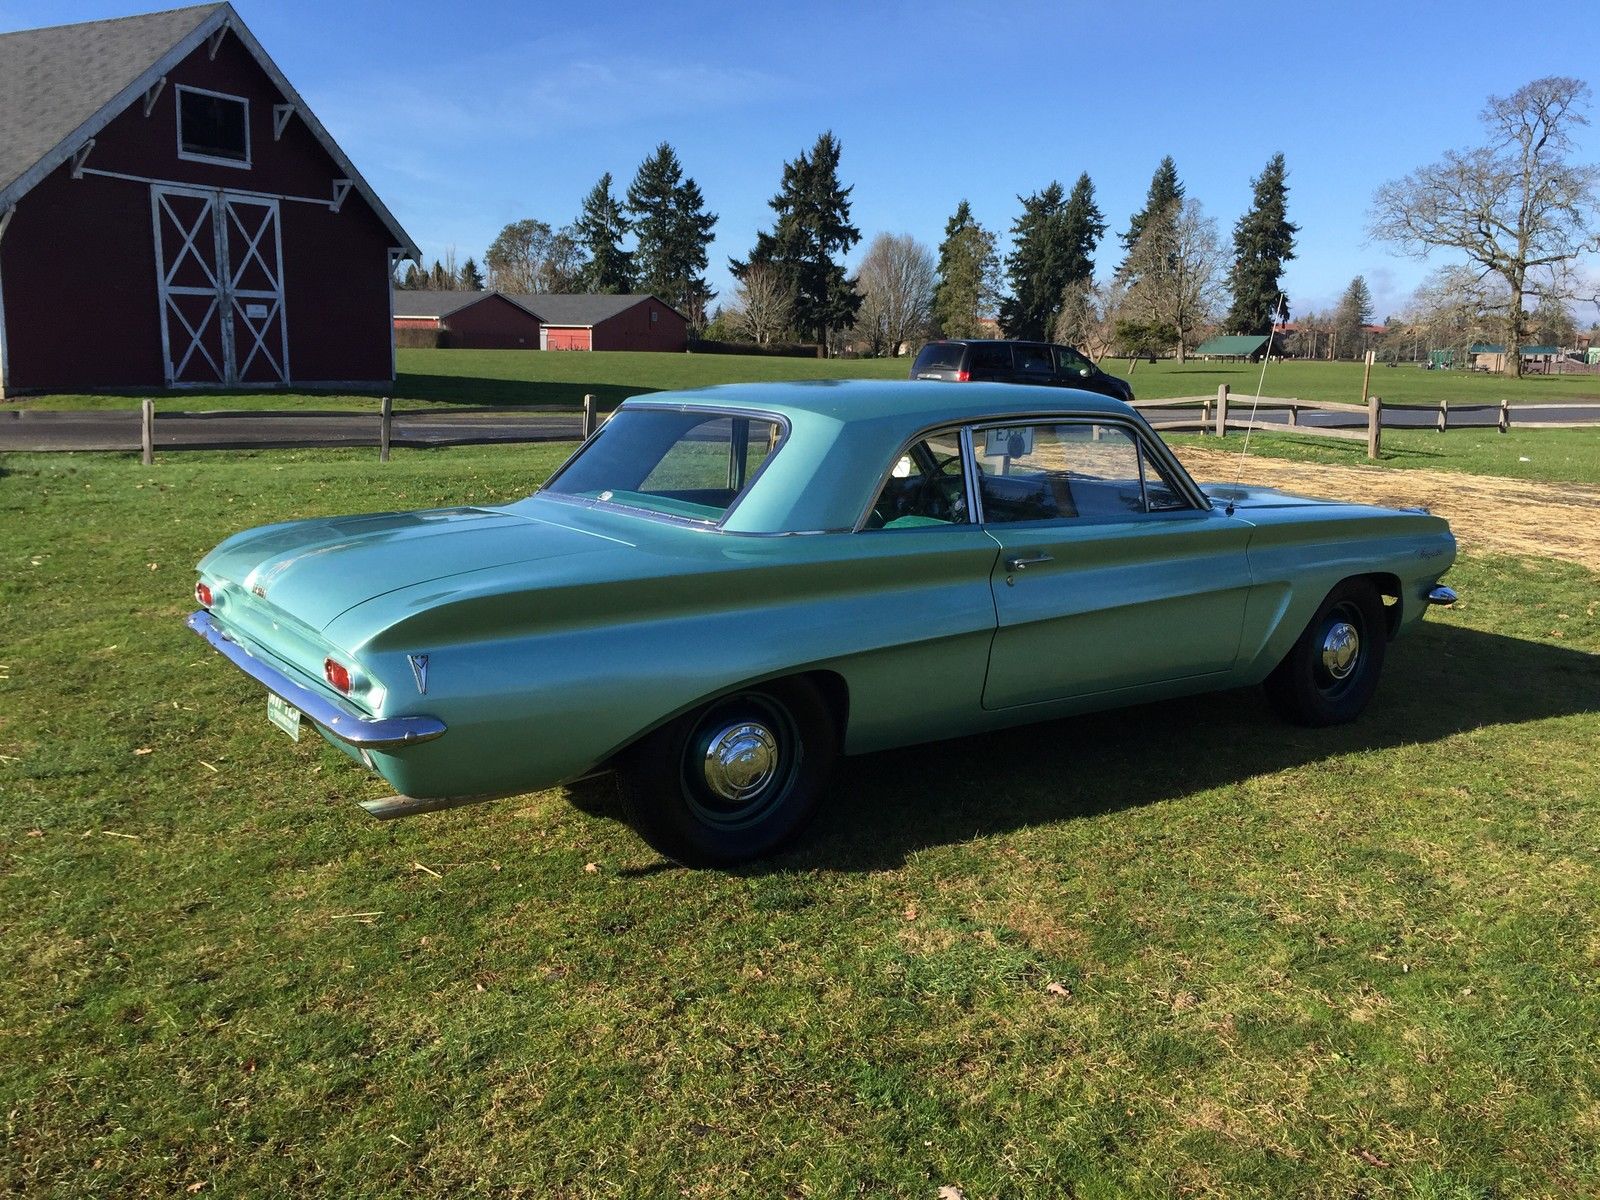 1961 Pontiac Tempest Daily Driver Coupe 41k Original Miles No Reserve